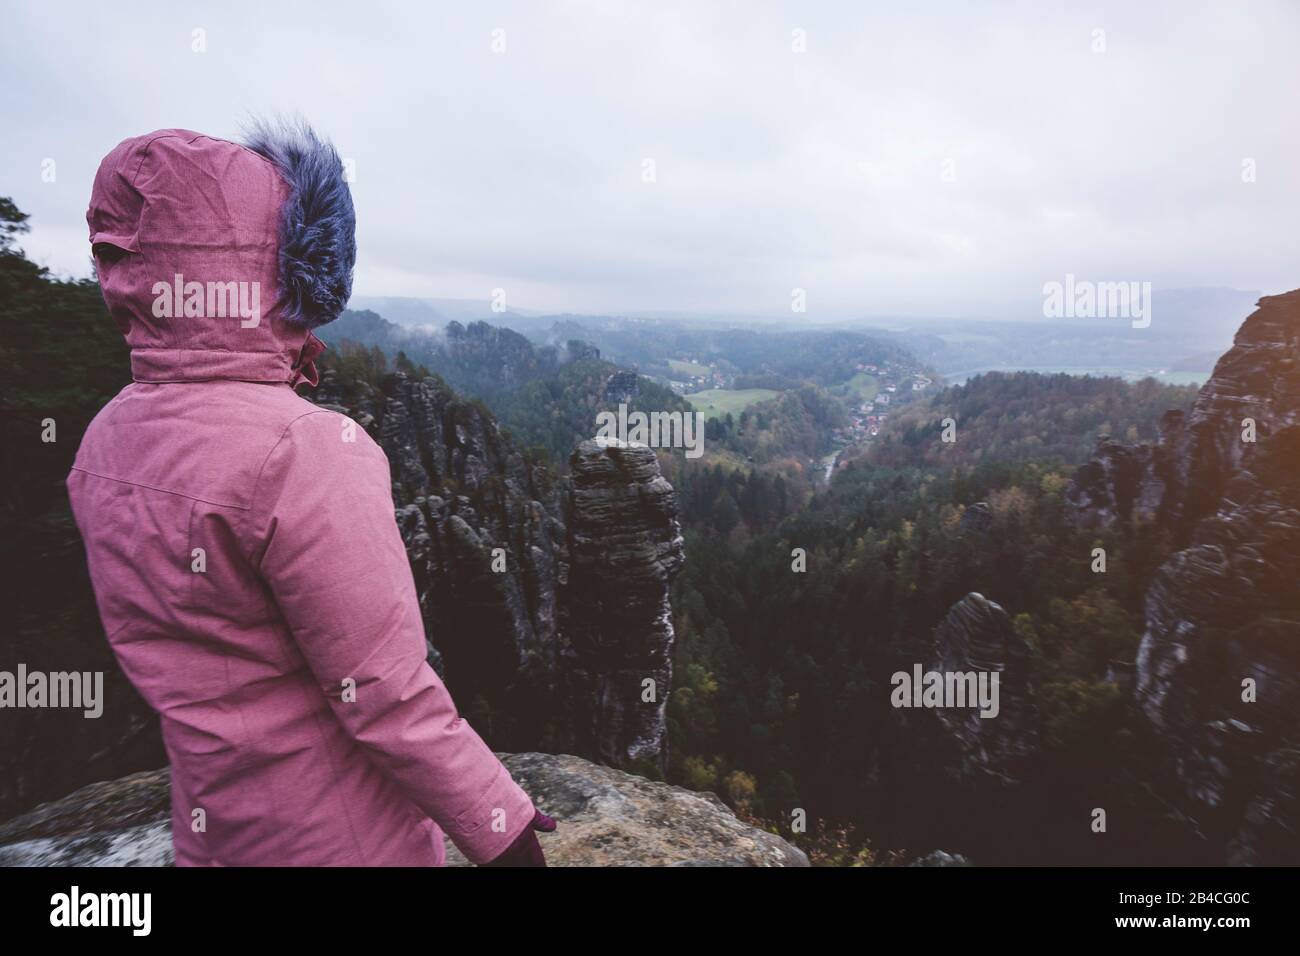 Junge Frau in winterlicher Kleidung im Freien, die allein auf einem Berg steht und die Aussicht genießt, Reiselebensstil-Harmoniekonzept, Rückansicht Foto Stock